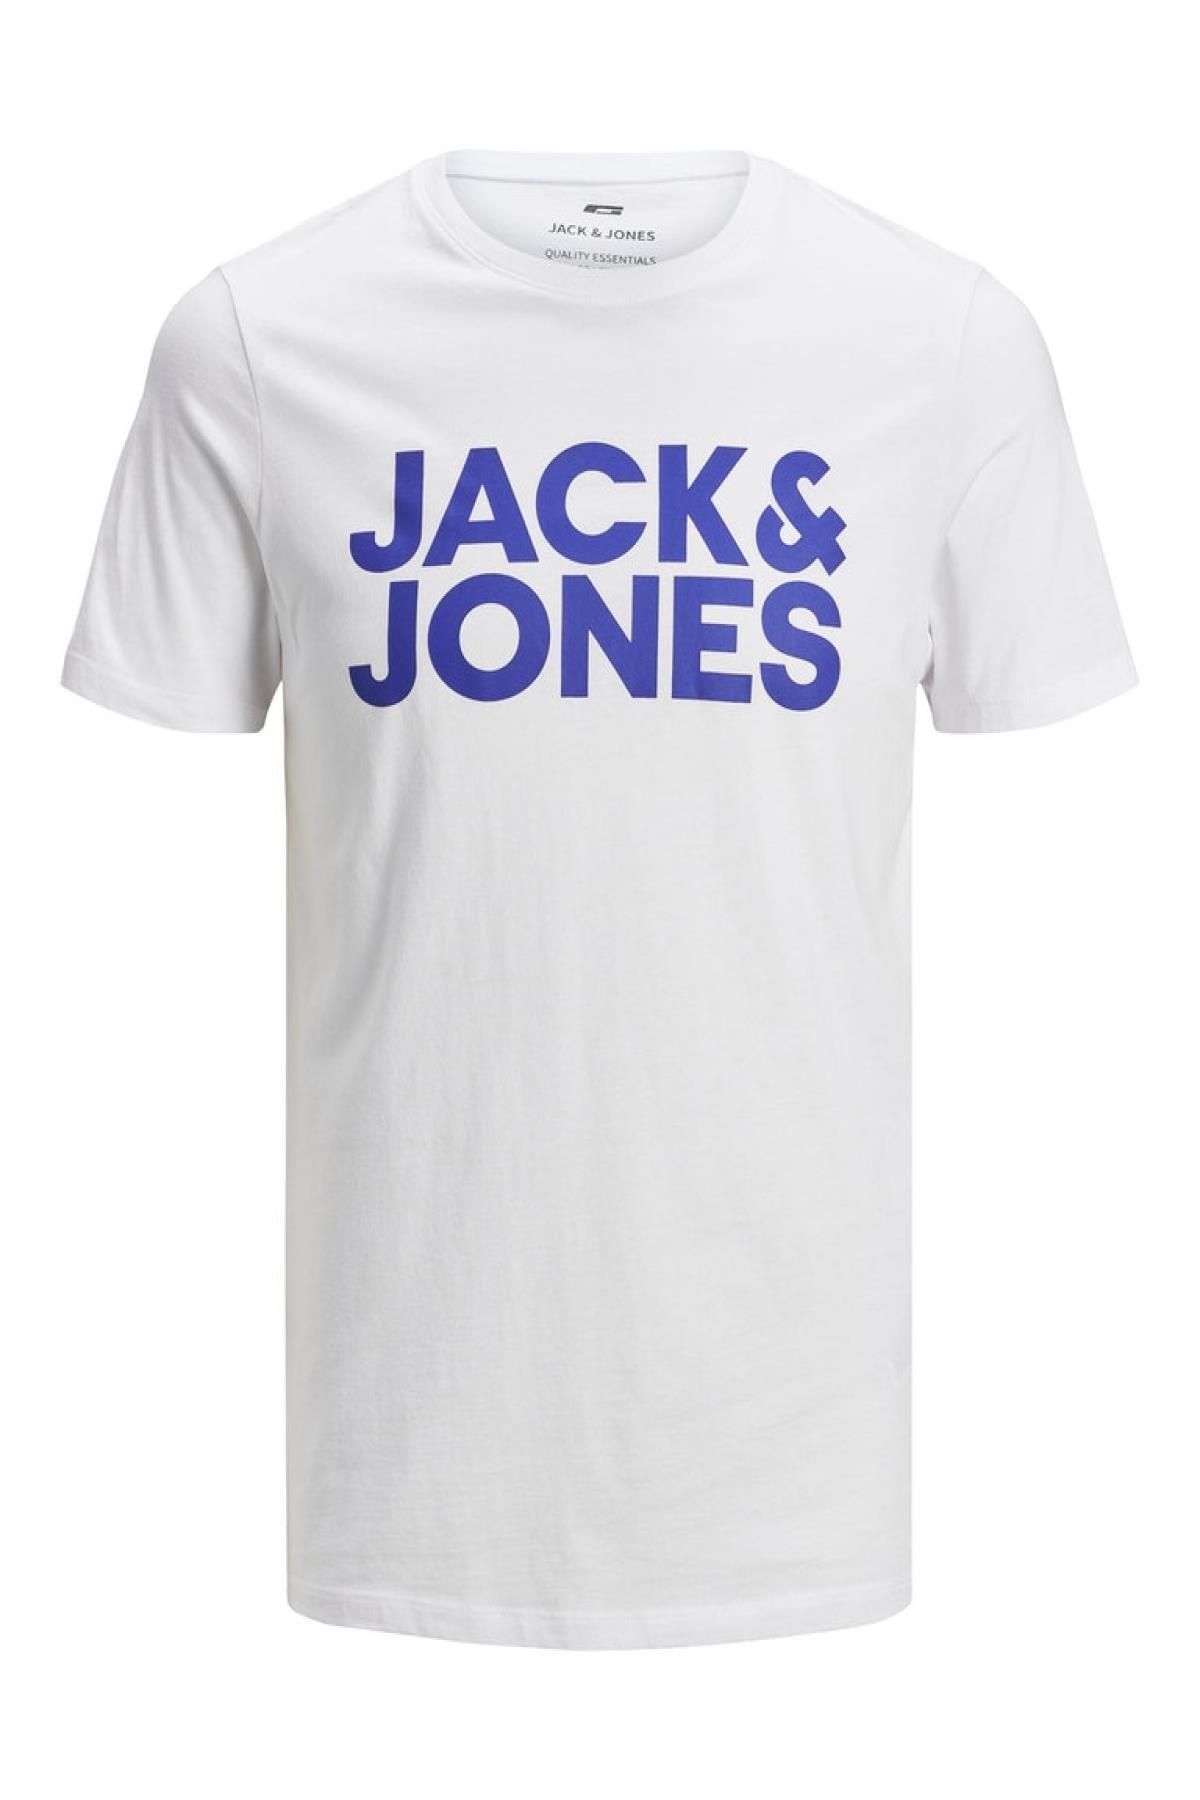 Jack & Jones Jack Jones Logo Erkek Tişört 12151955